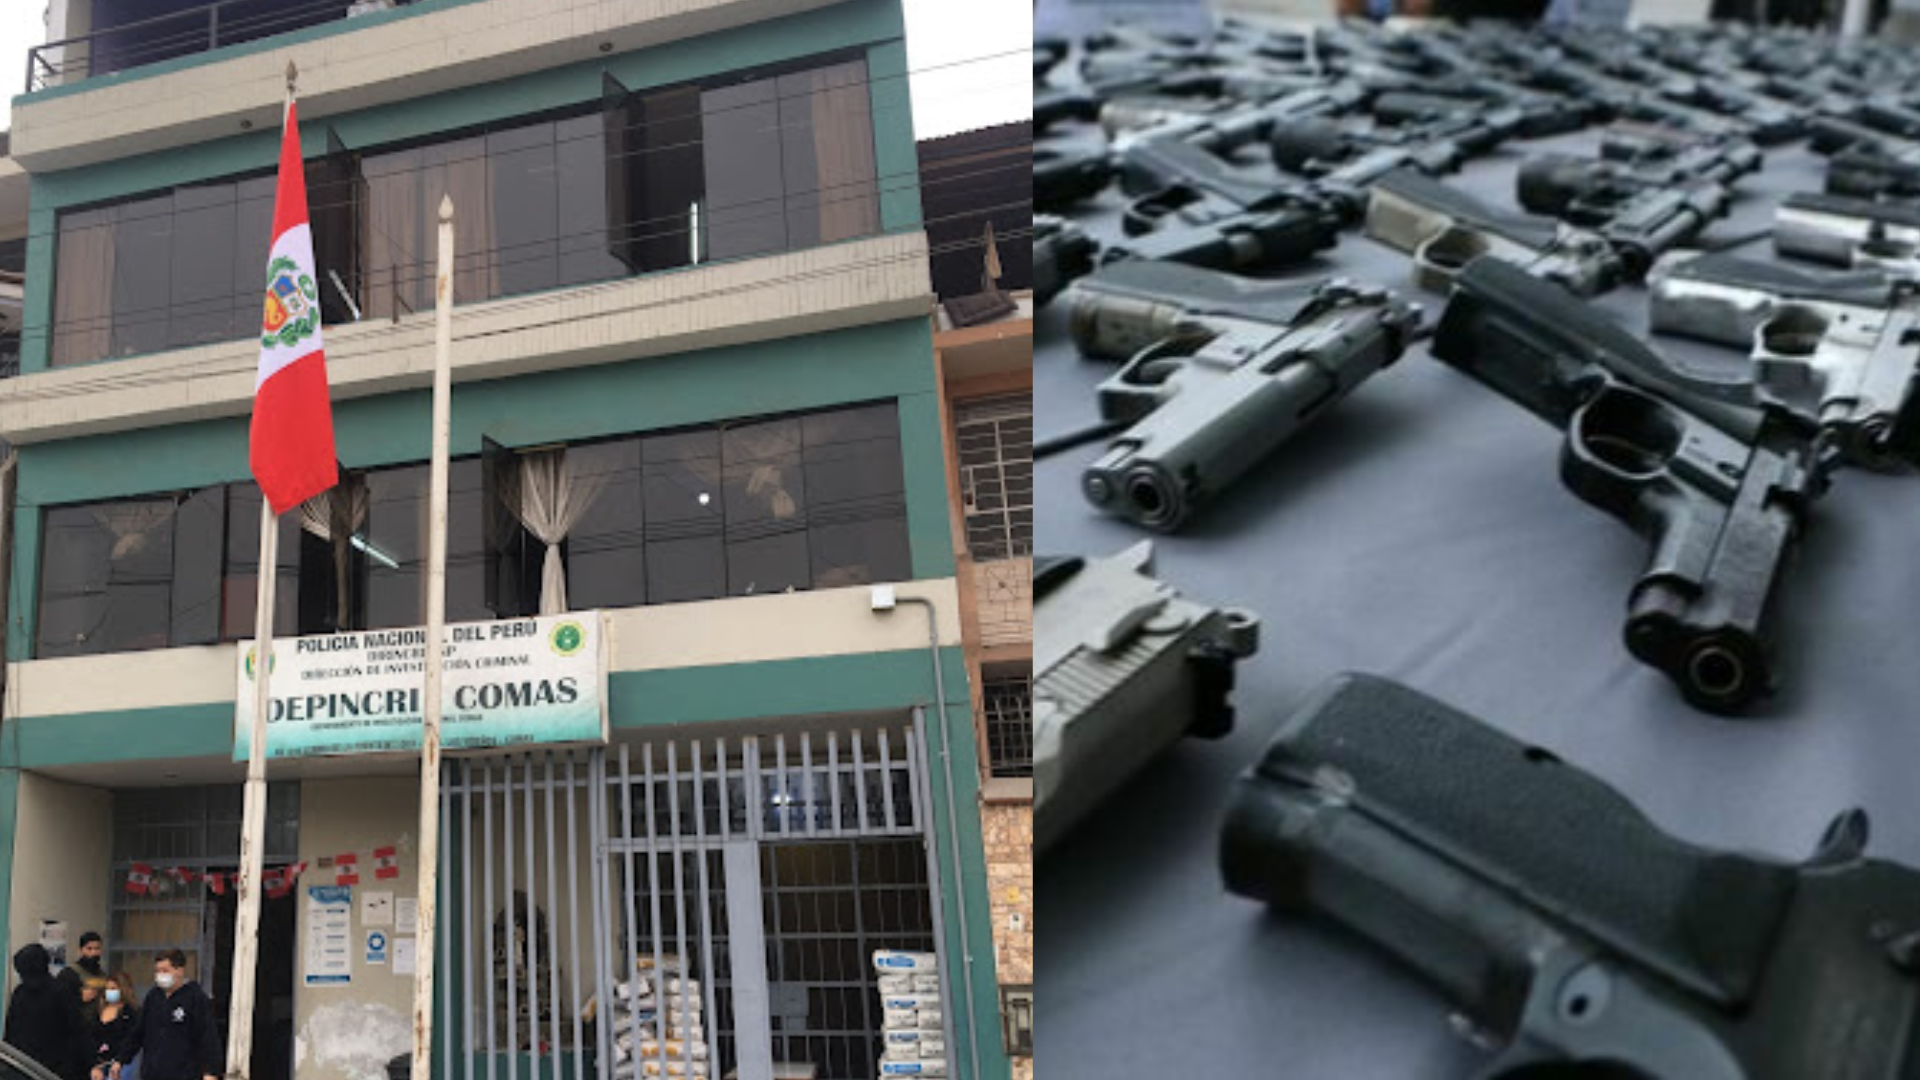 Comas: desaparecen más de 20 armas de fuego de la Depincri